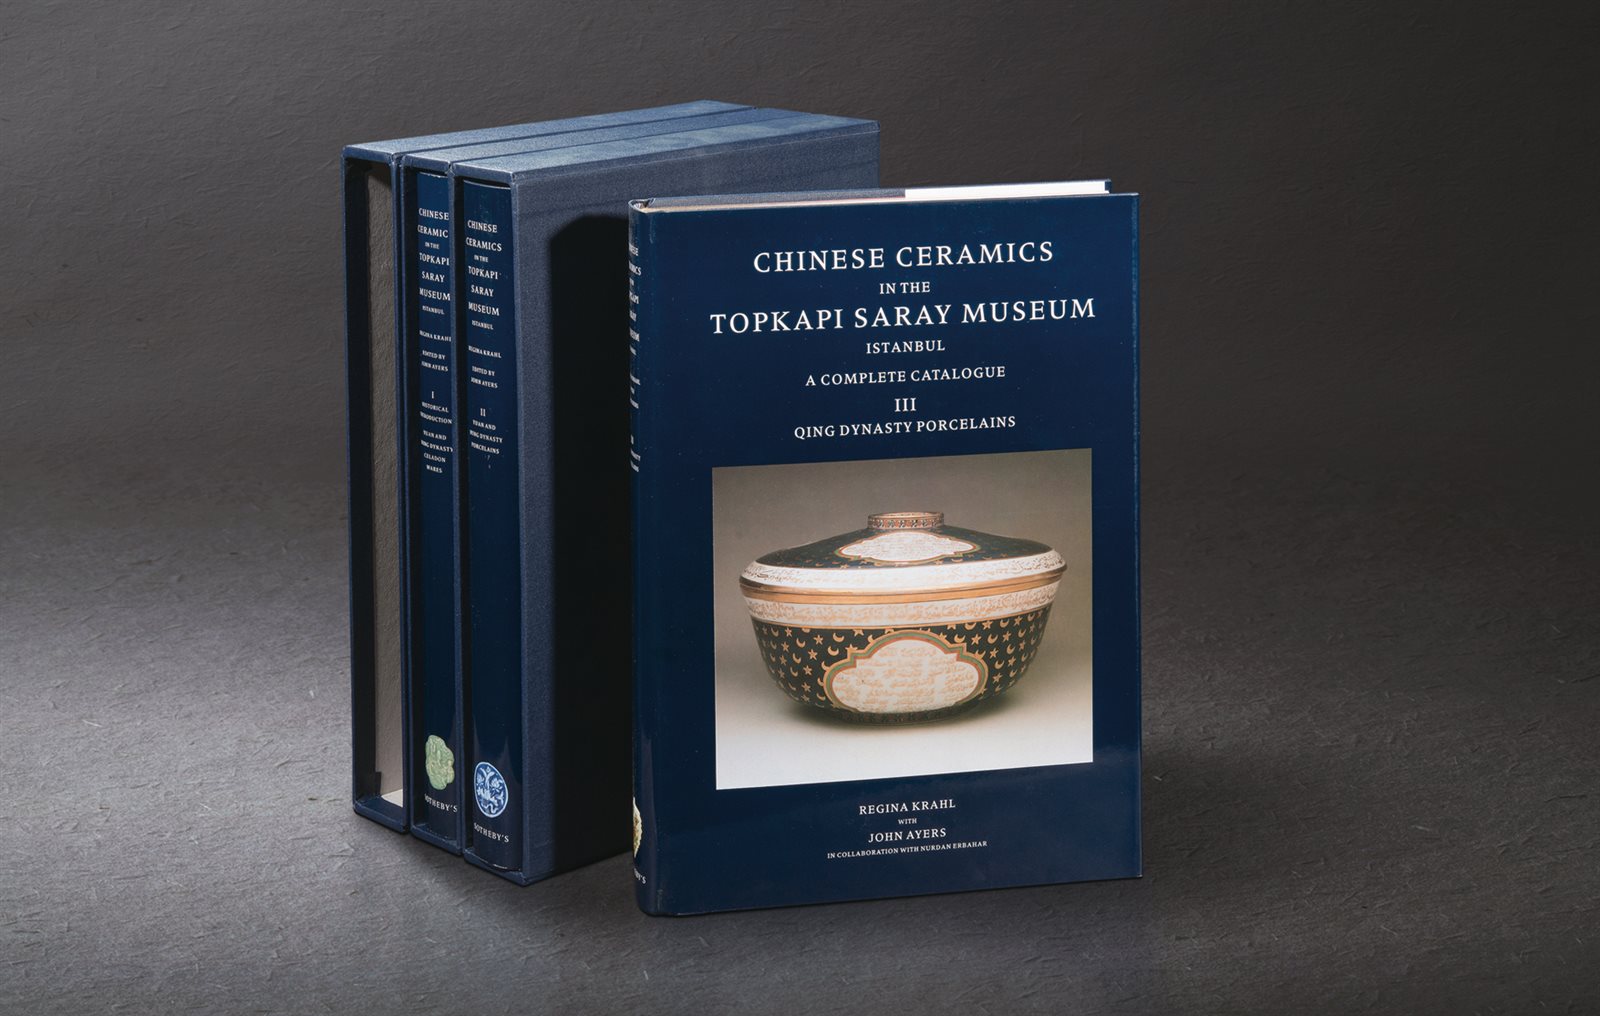 限量编号精装《伊斯坦布尔托普卡比宫殿博物馆藏中国陶瓷》三册全